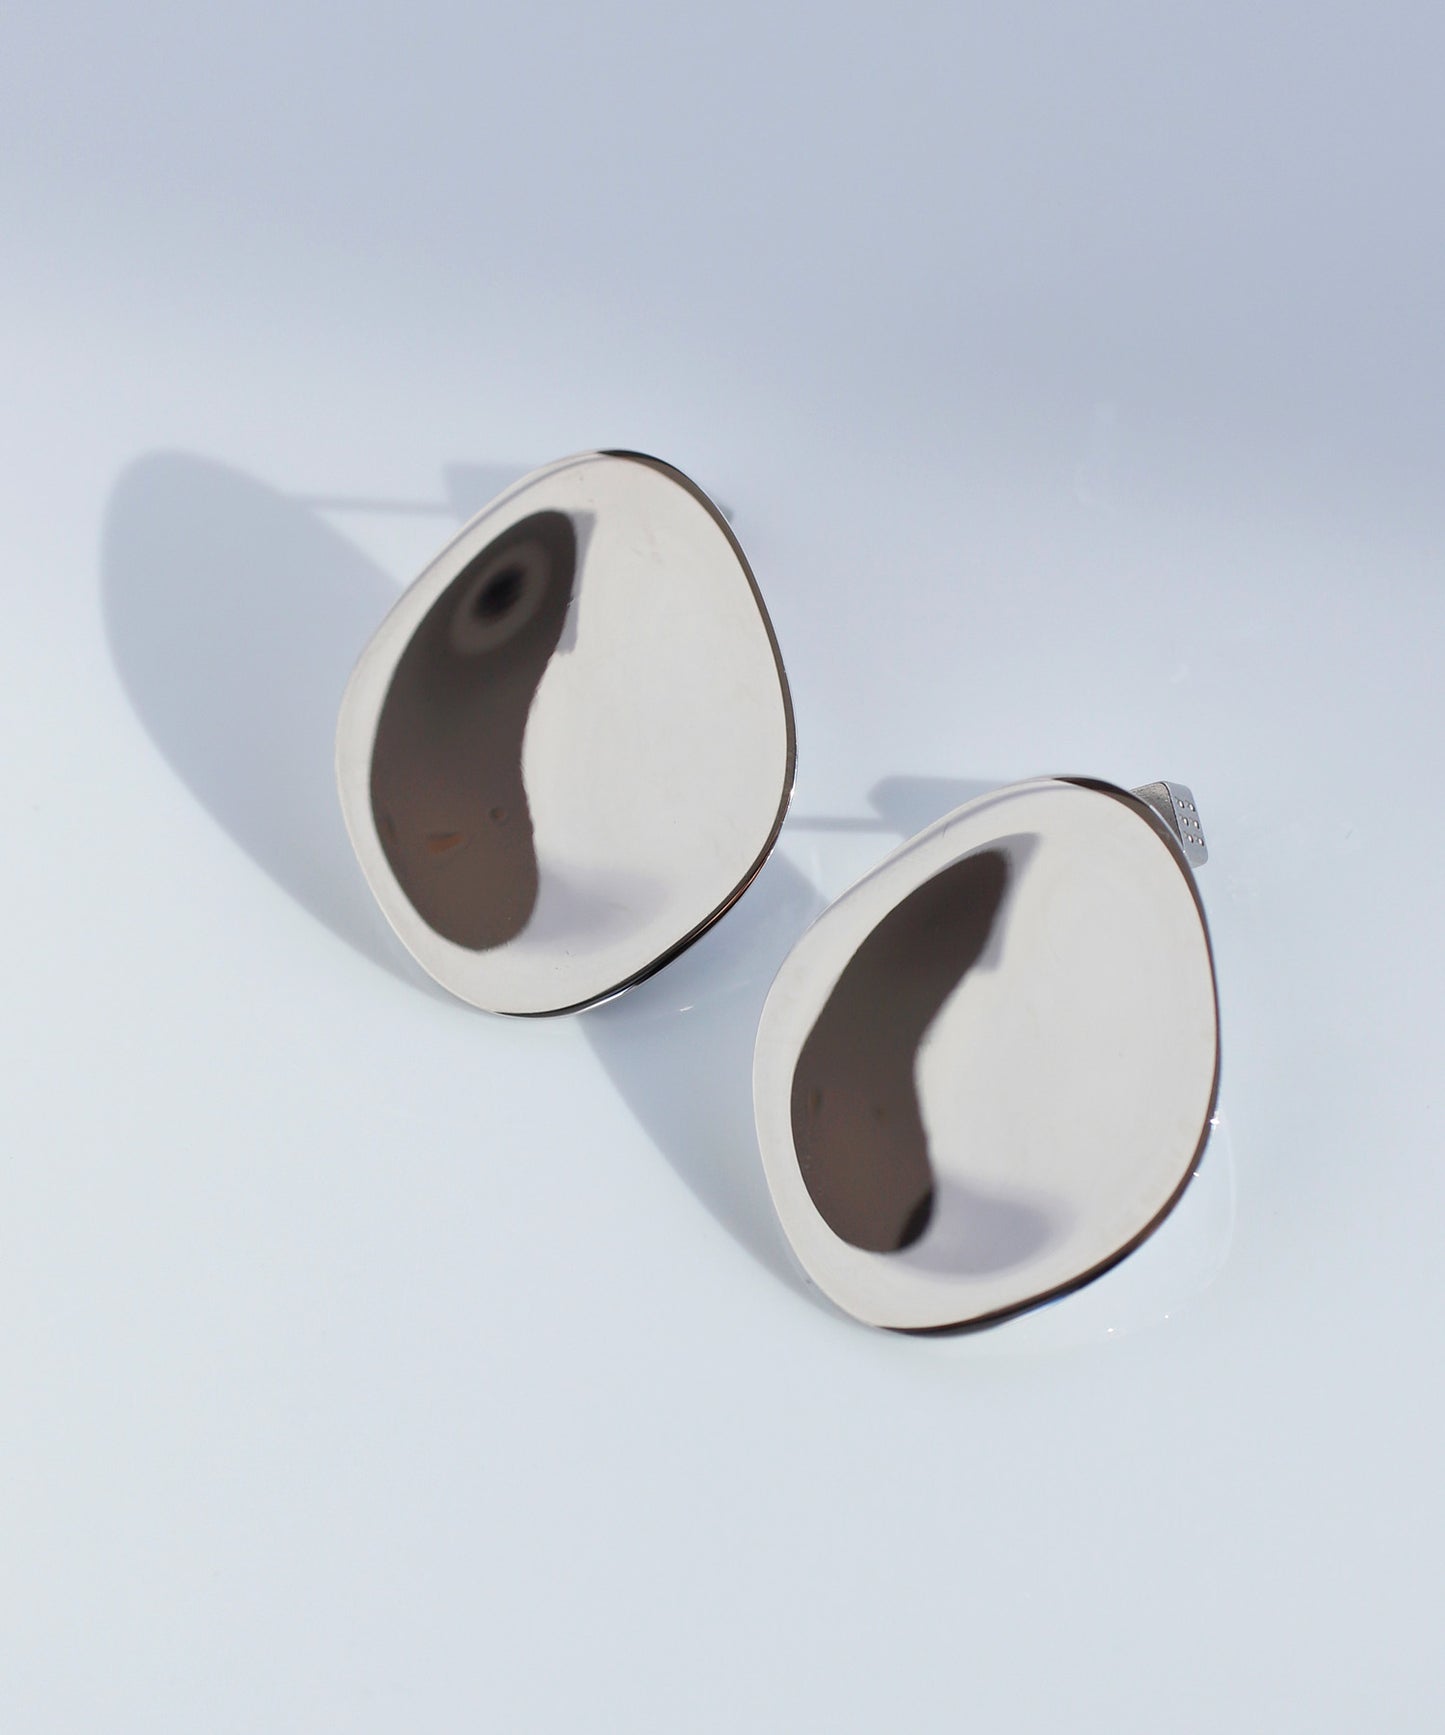 【Stainless Steel IP】 Metal Plate Earrings